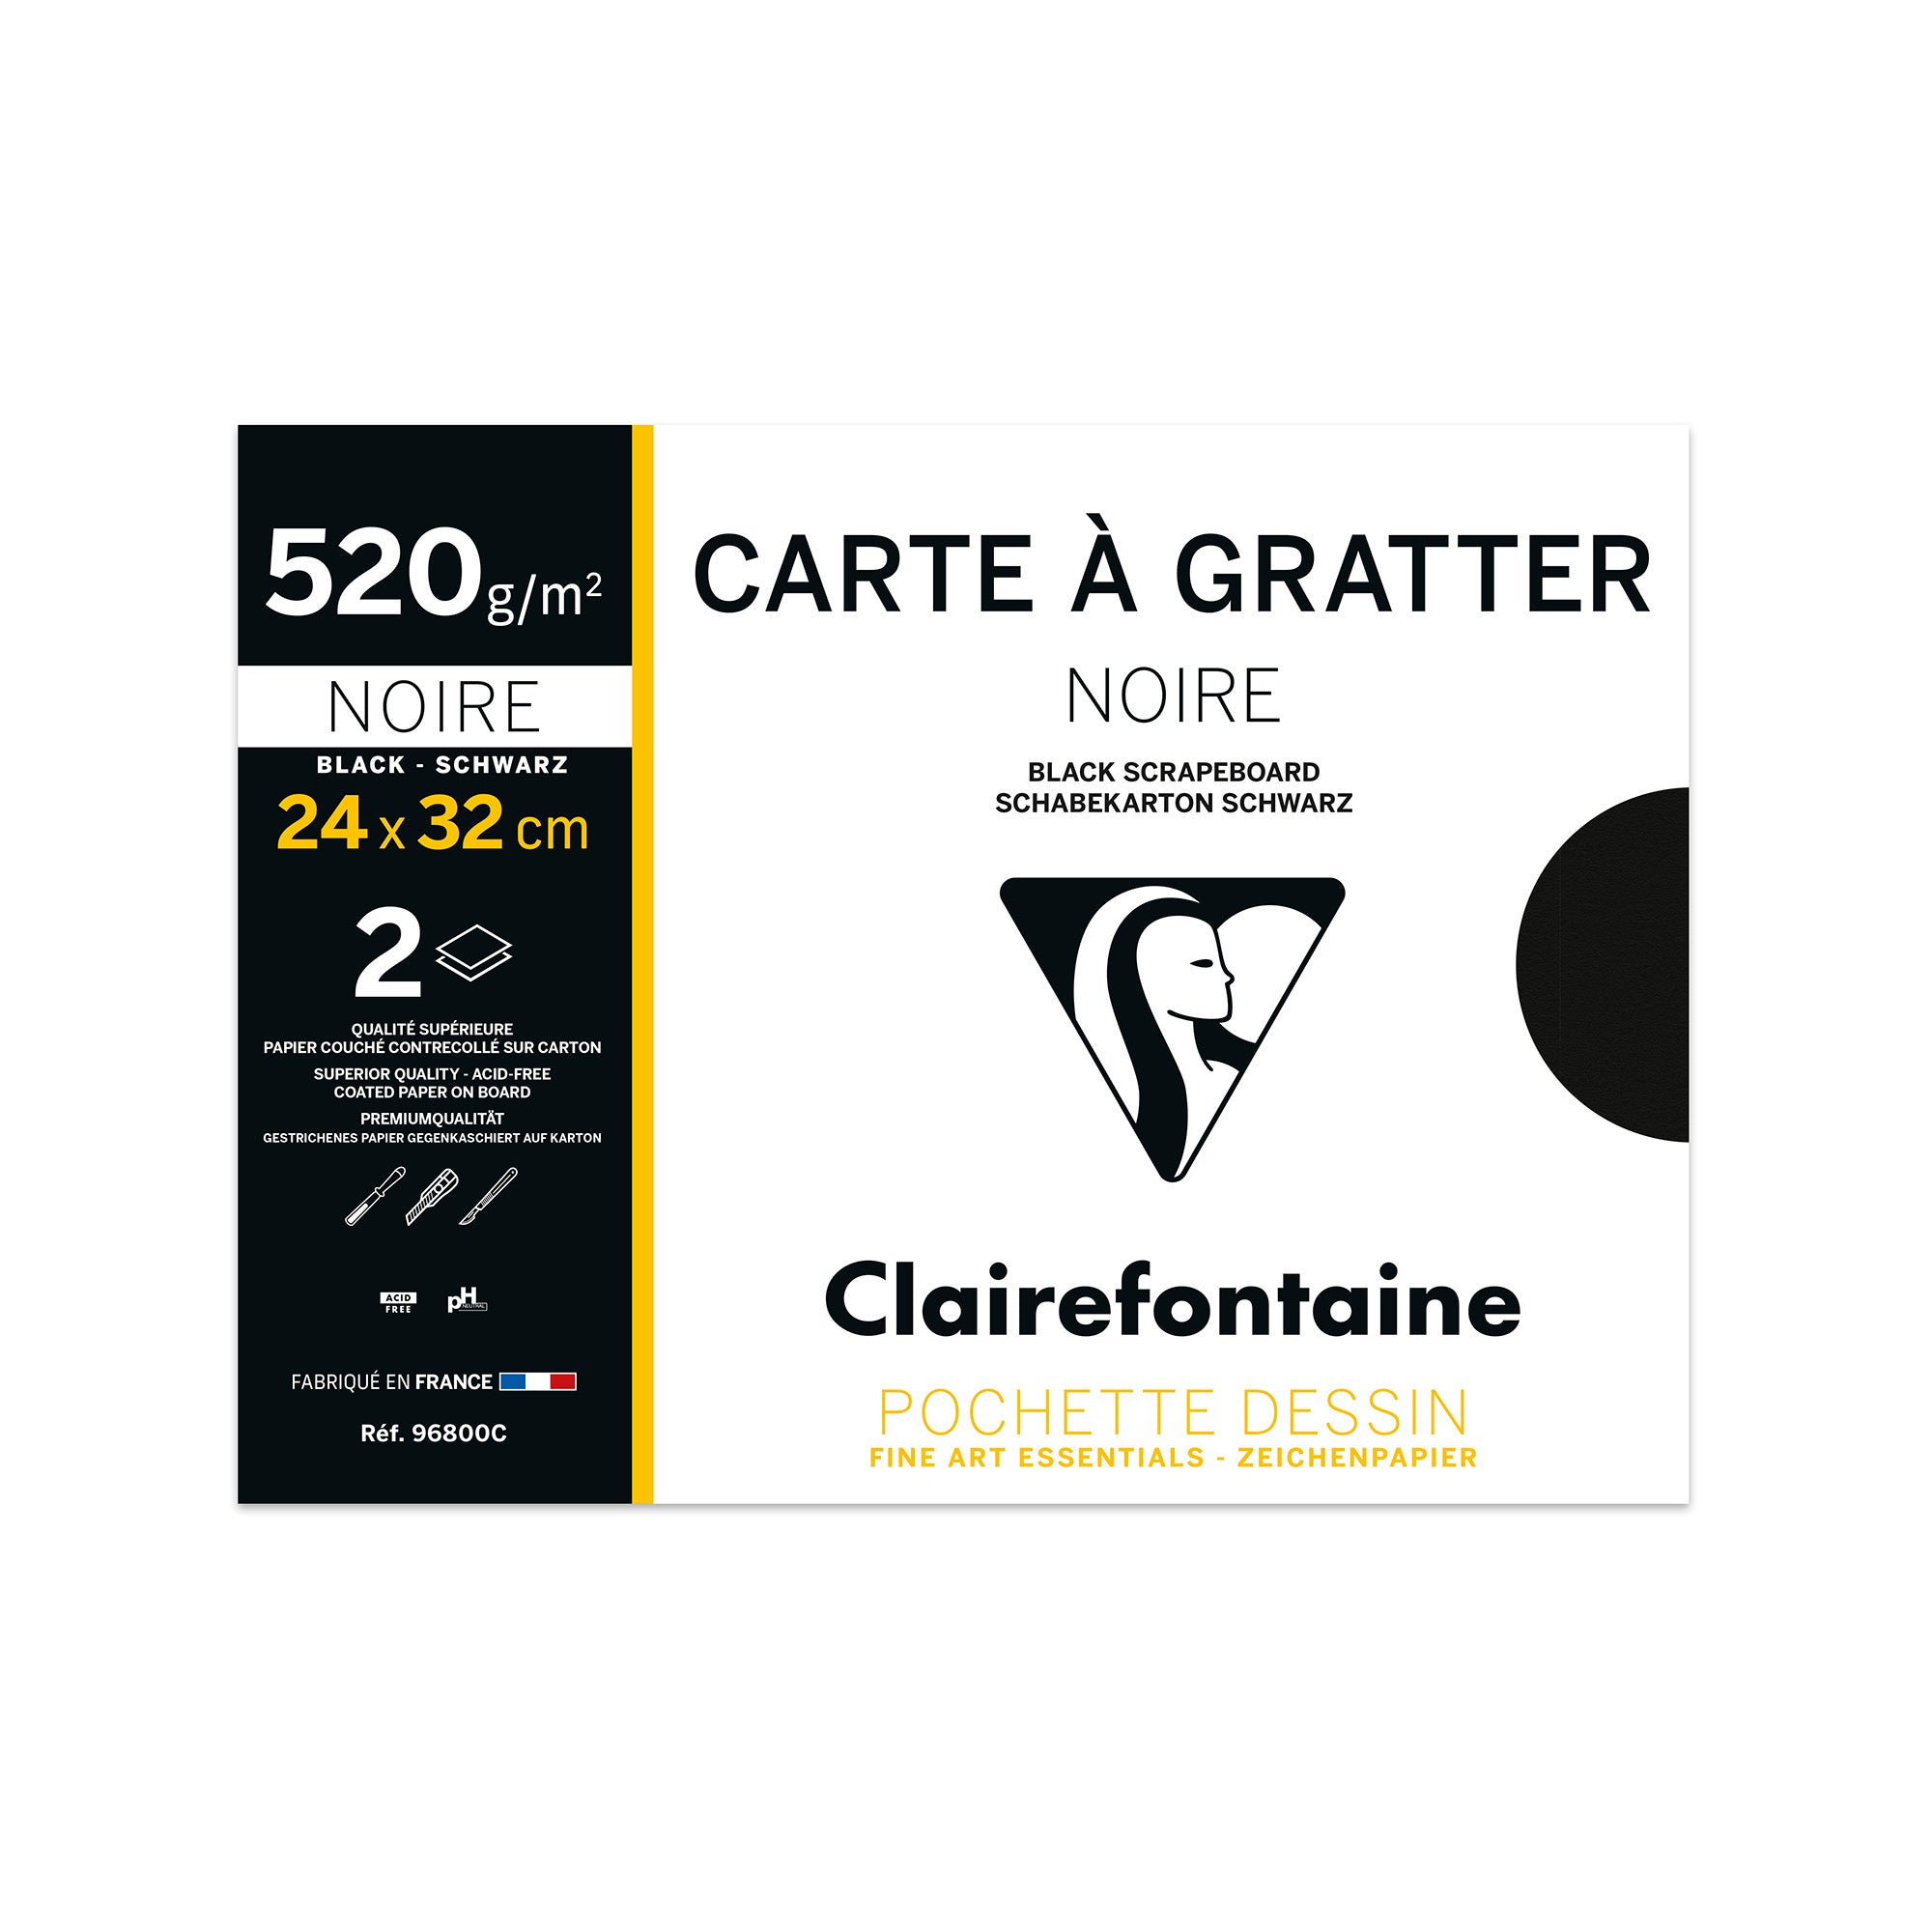 CARTE-A-GRATTER, Sachet de 10 feuilles 300g/m2 au format A4 (21x29